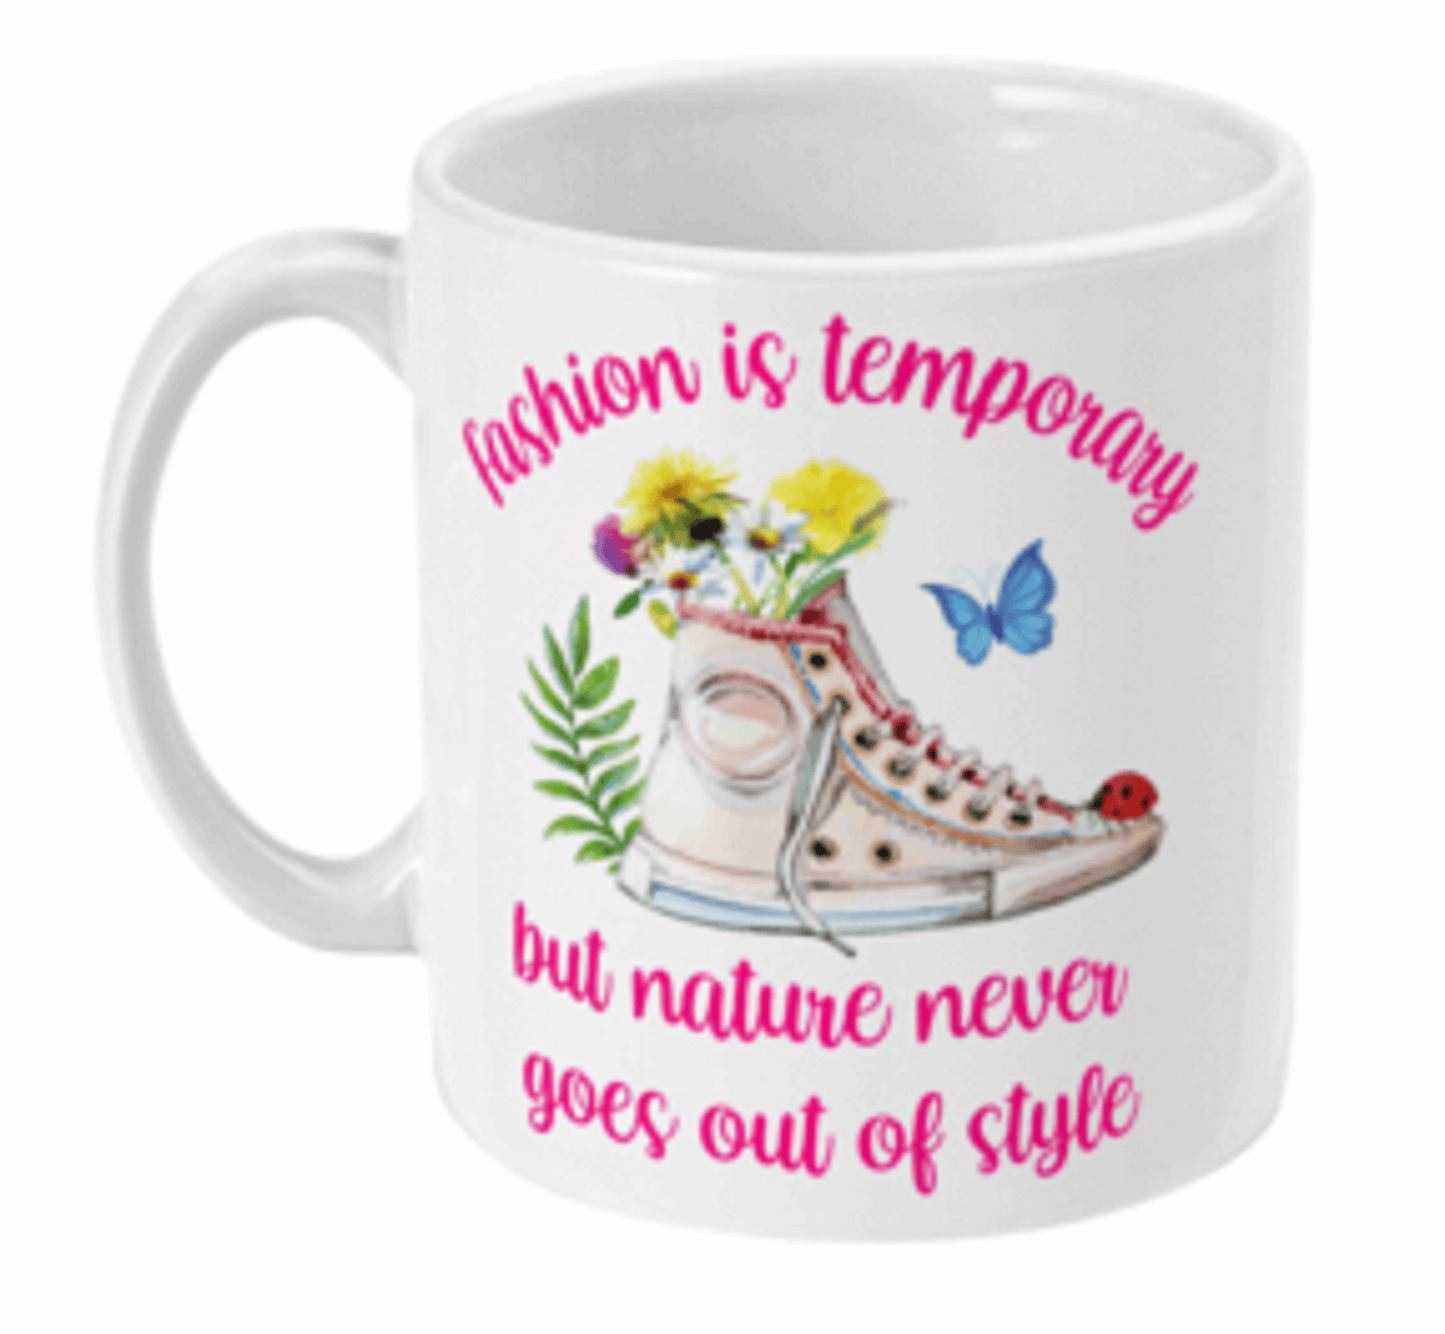  Fashion is Temporary Coffee Mug by Free Spirit Accessories sold by Free Spirit Accessories